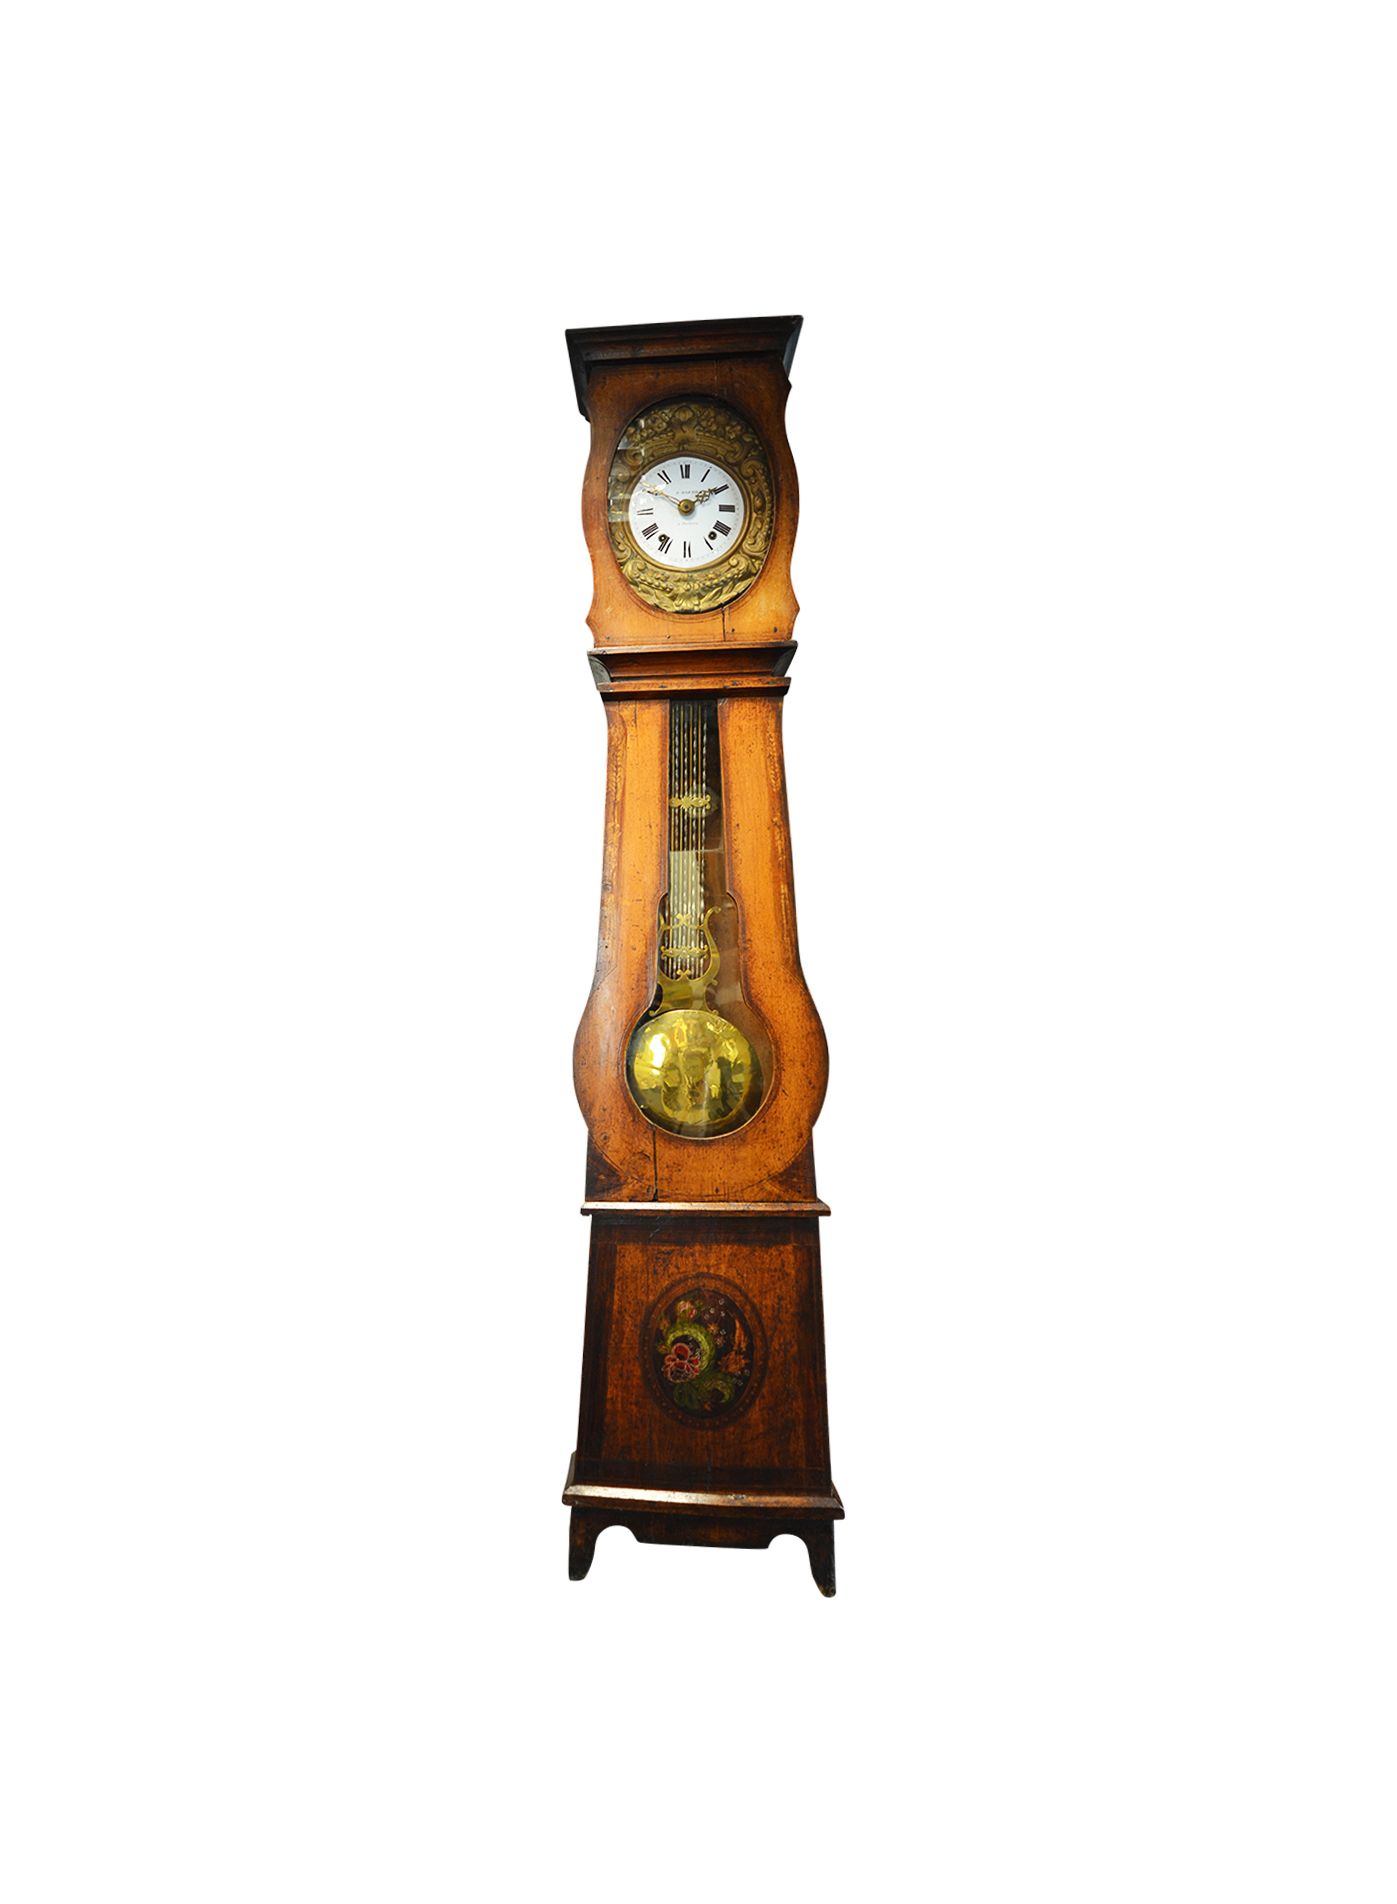 Reizen commentaar Heel veel goeds Antieke comtoise staande klok met mechanisch uurwerk kopen